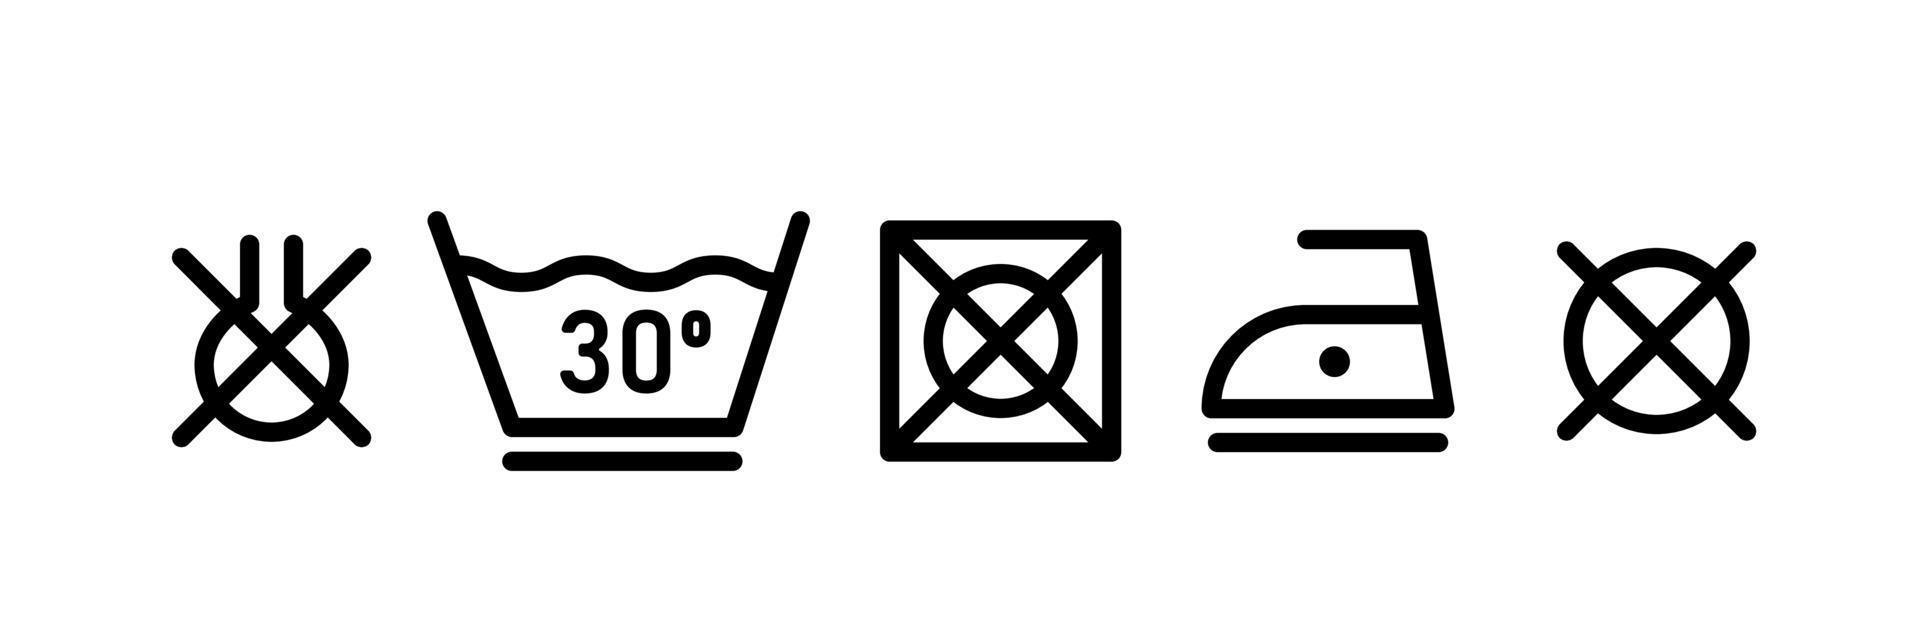 conjunto de ícones de linha de lavanderia. símbolo para lavar roupas. ilustração vetorial vetor